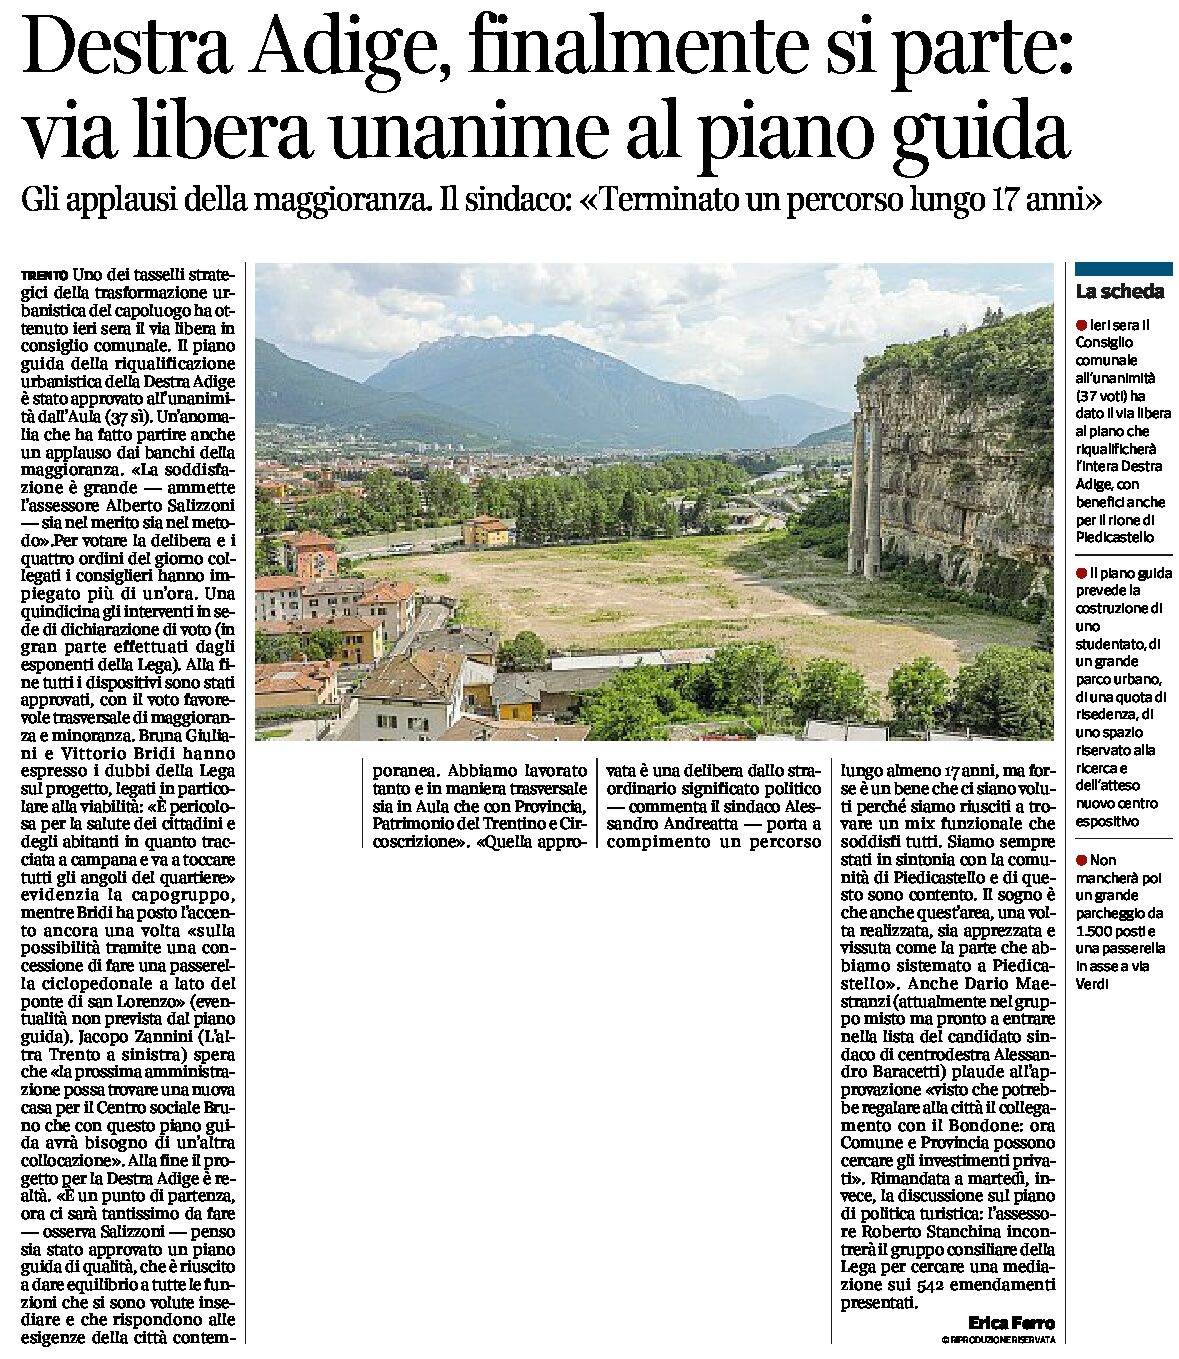 Trento, Destra Adige: finalmente si parte. Via libera unanime al piano guida